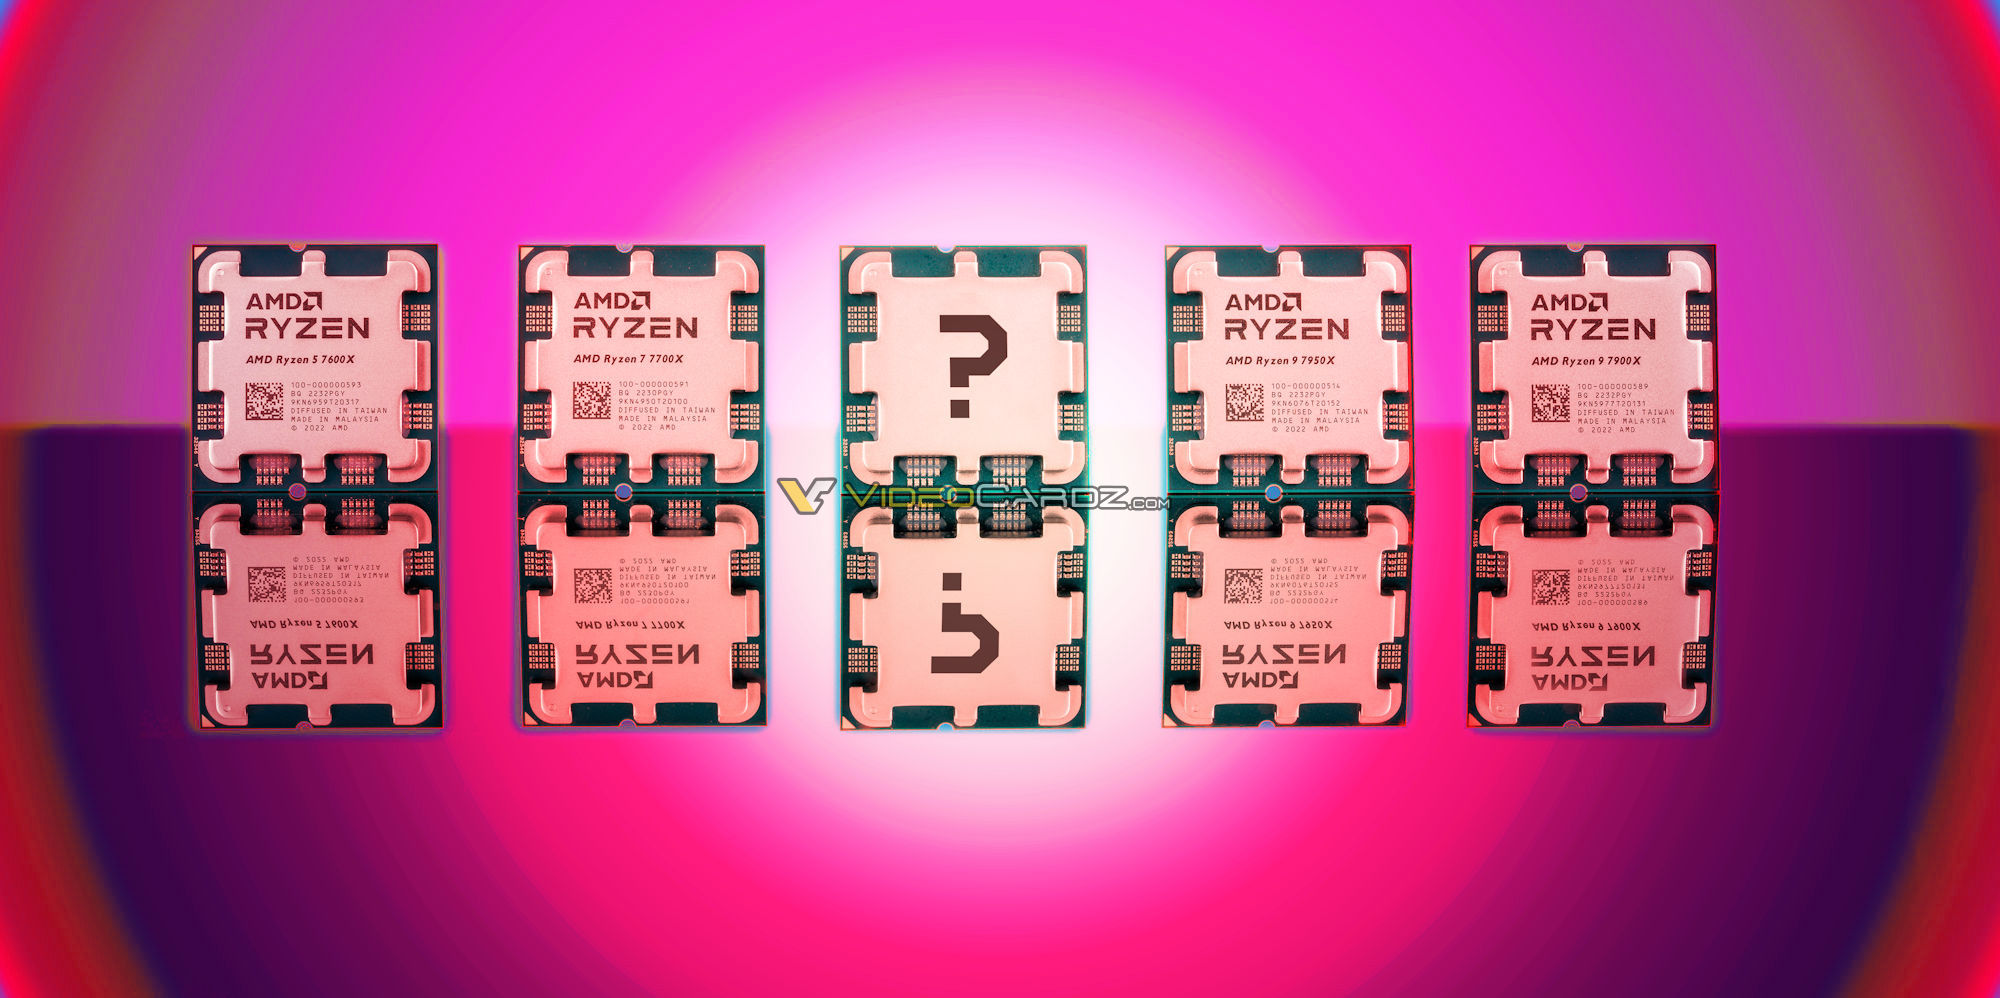 AMDs kommende Ryzen 9 7900- und Ryzen 7 7700-Prozessoren bereits von Einzelhändlern gelistet